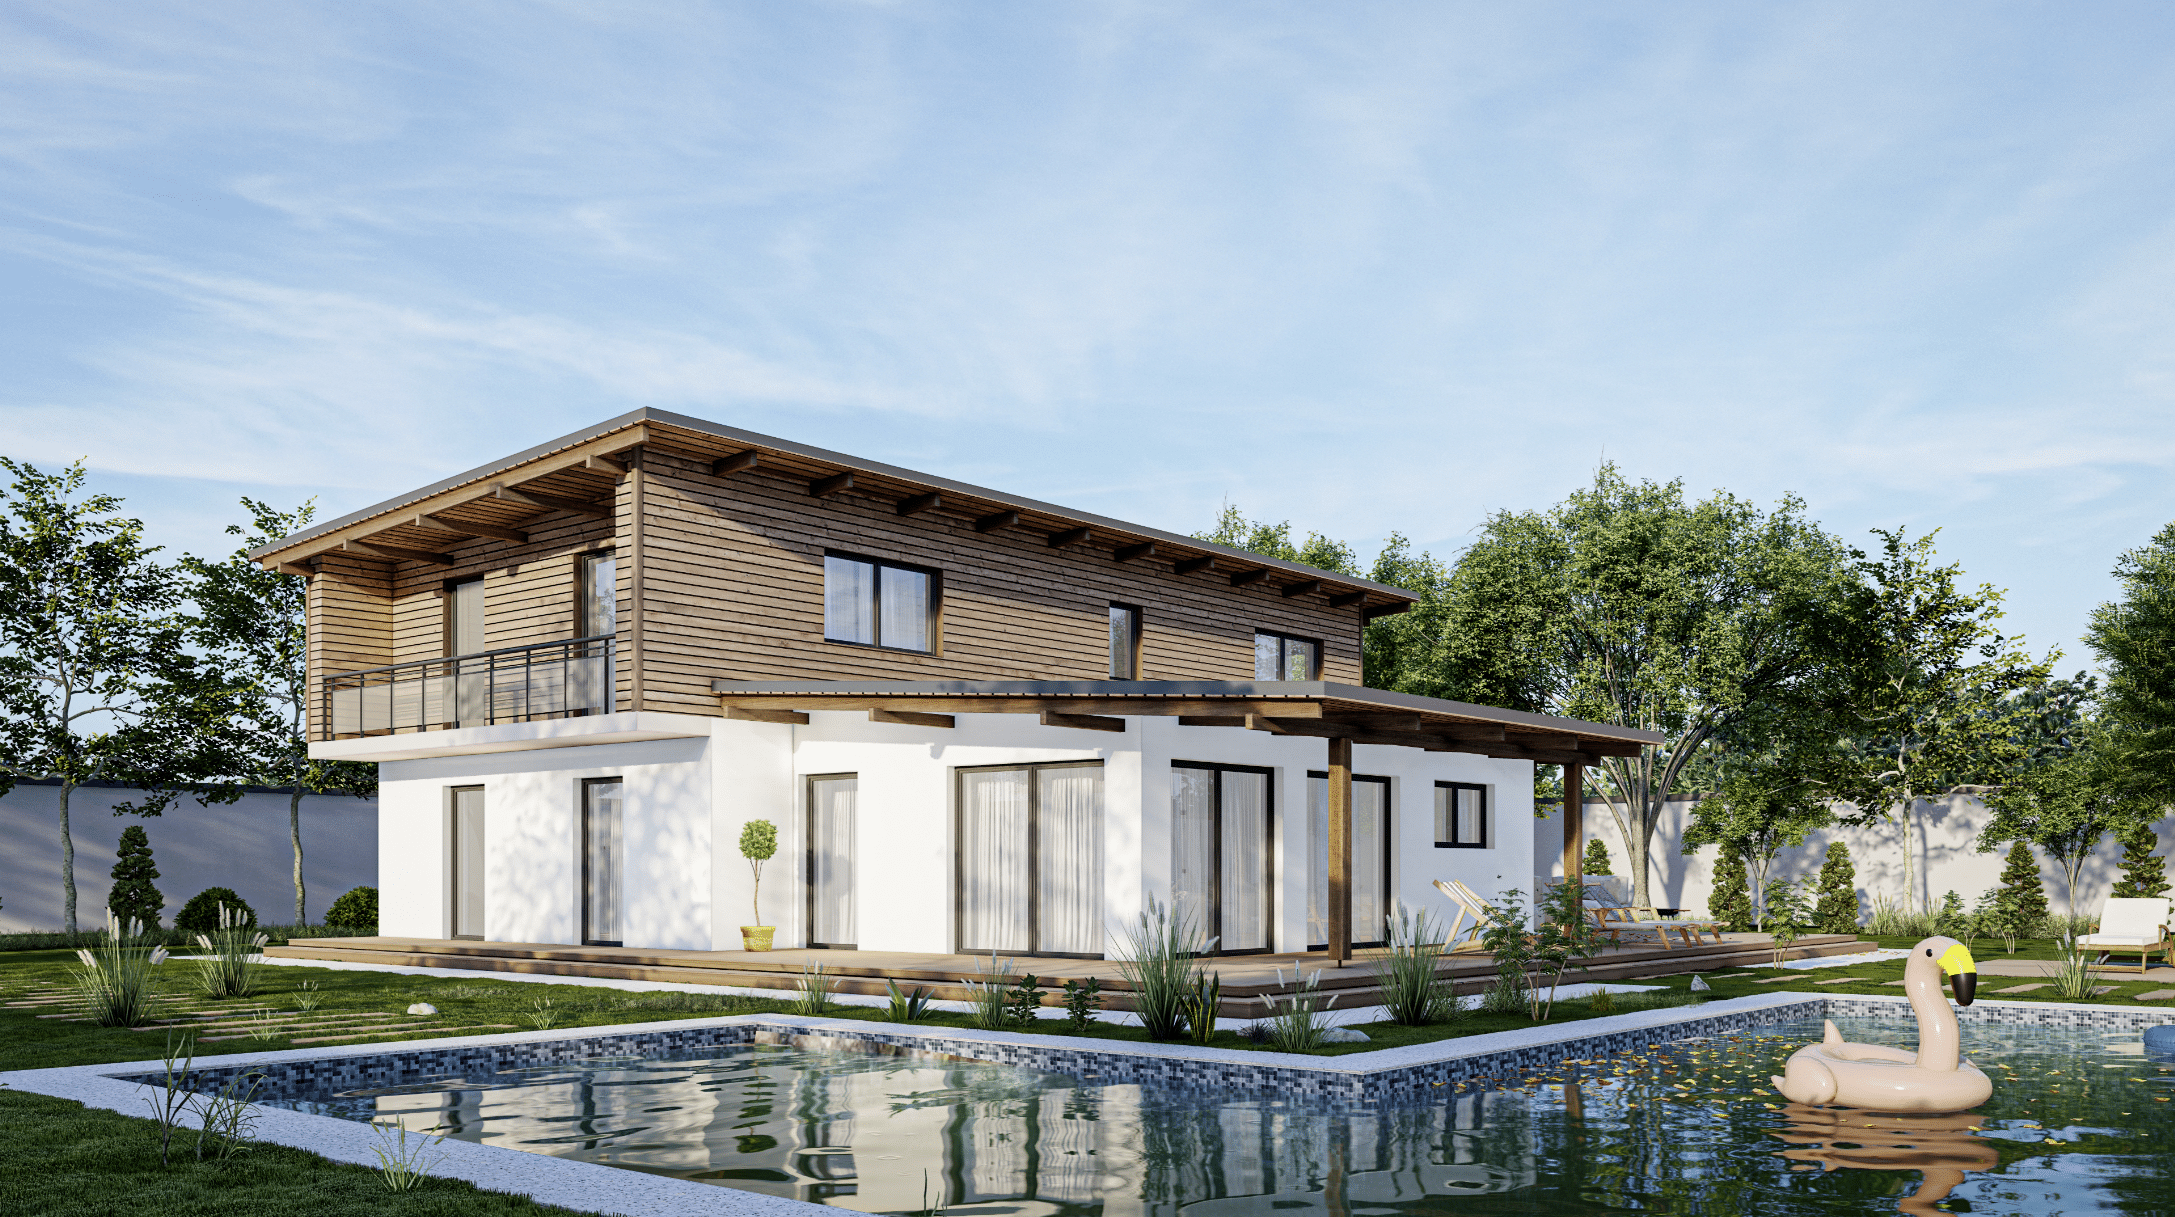 Das moderne Haus von Marles Fertighaus bezaubert mit seinen Holzelementen und den hohen Fensterfronten für exklusives Design.